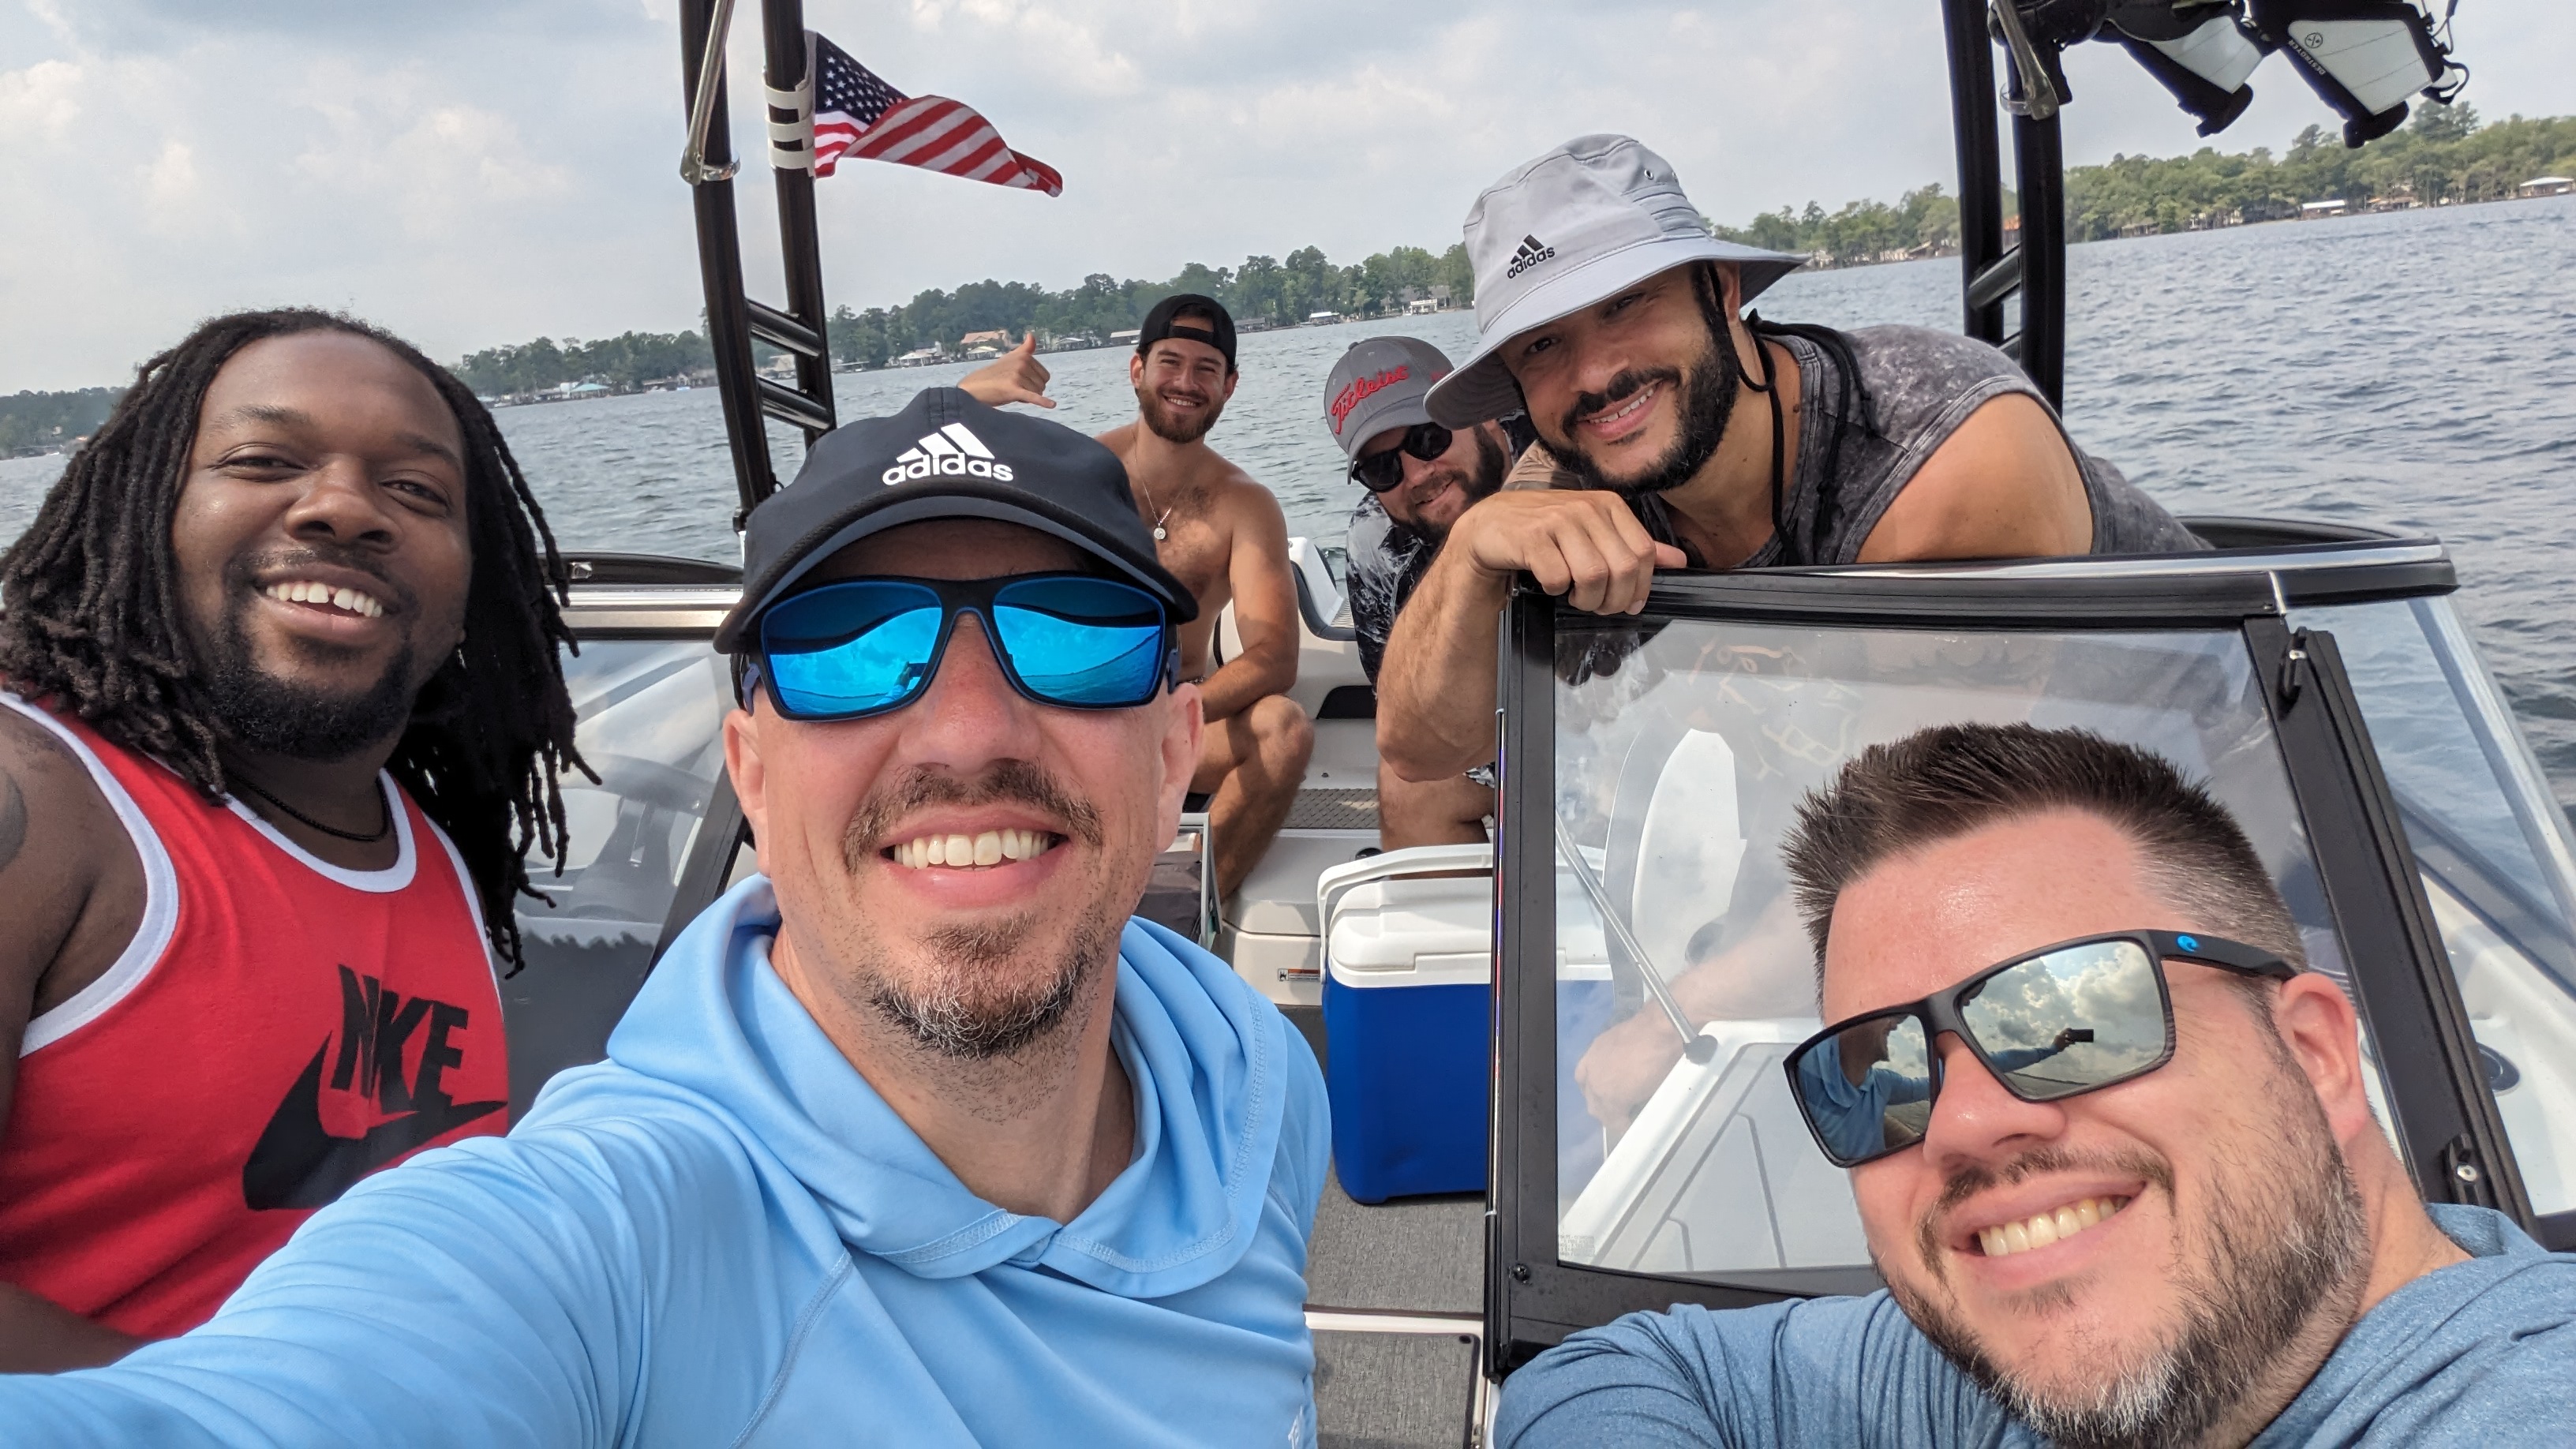 wayyyyy too many dudes on the boat